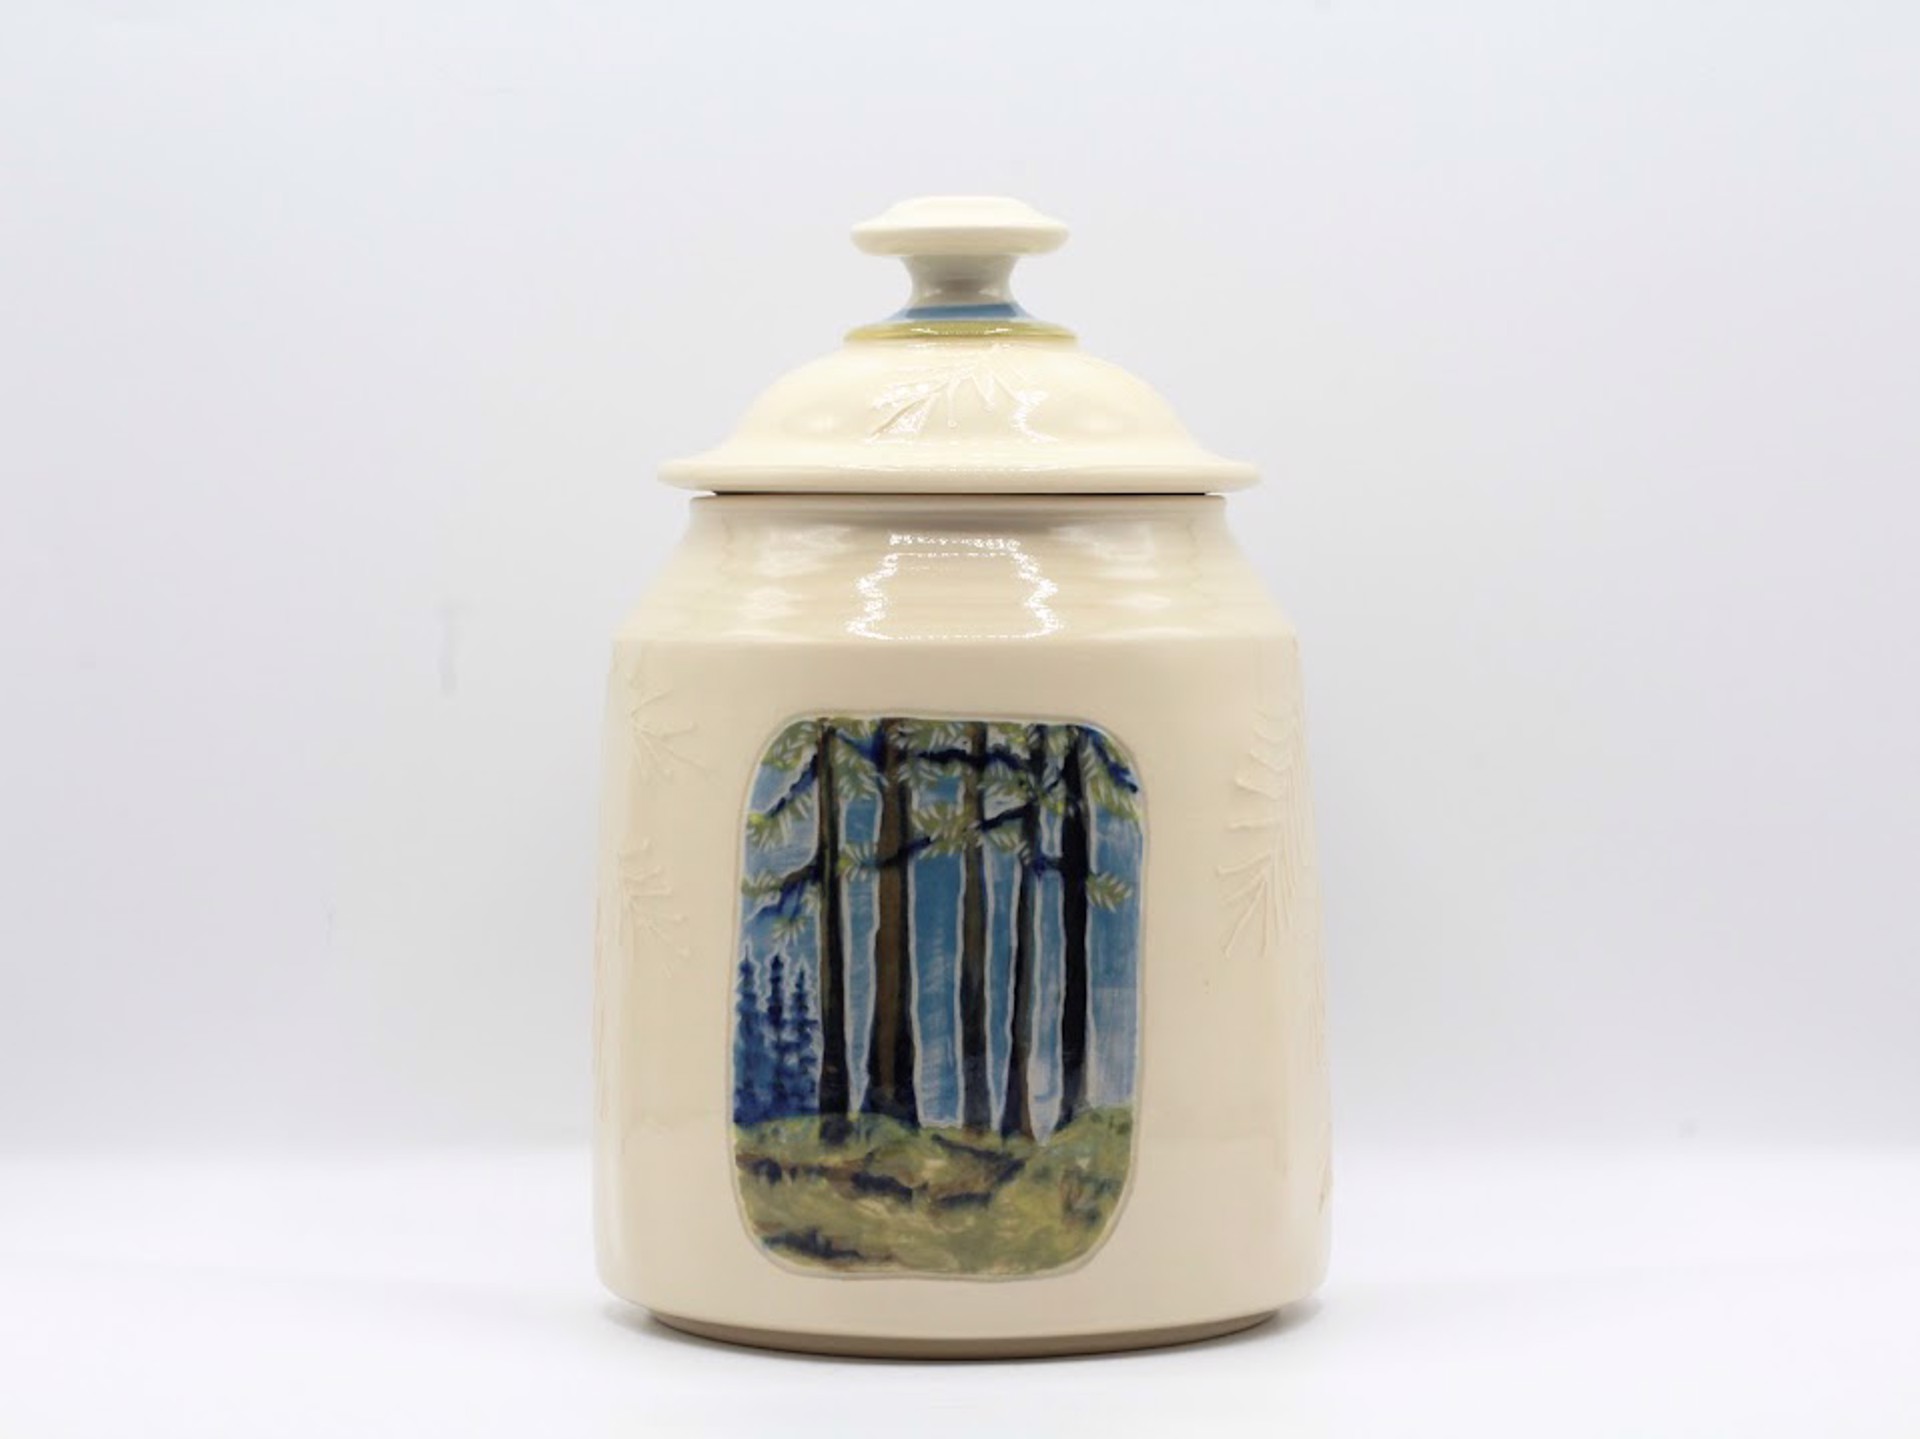 Lidded Jar (Seasonal Winter/Spring) by Kelly Price